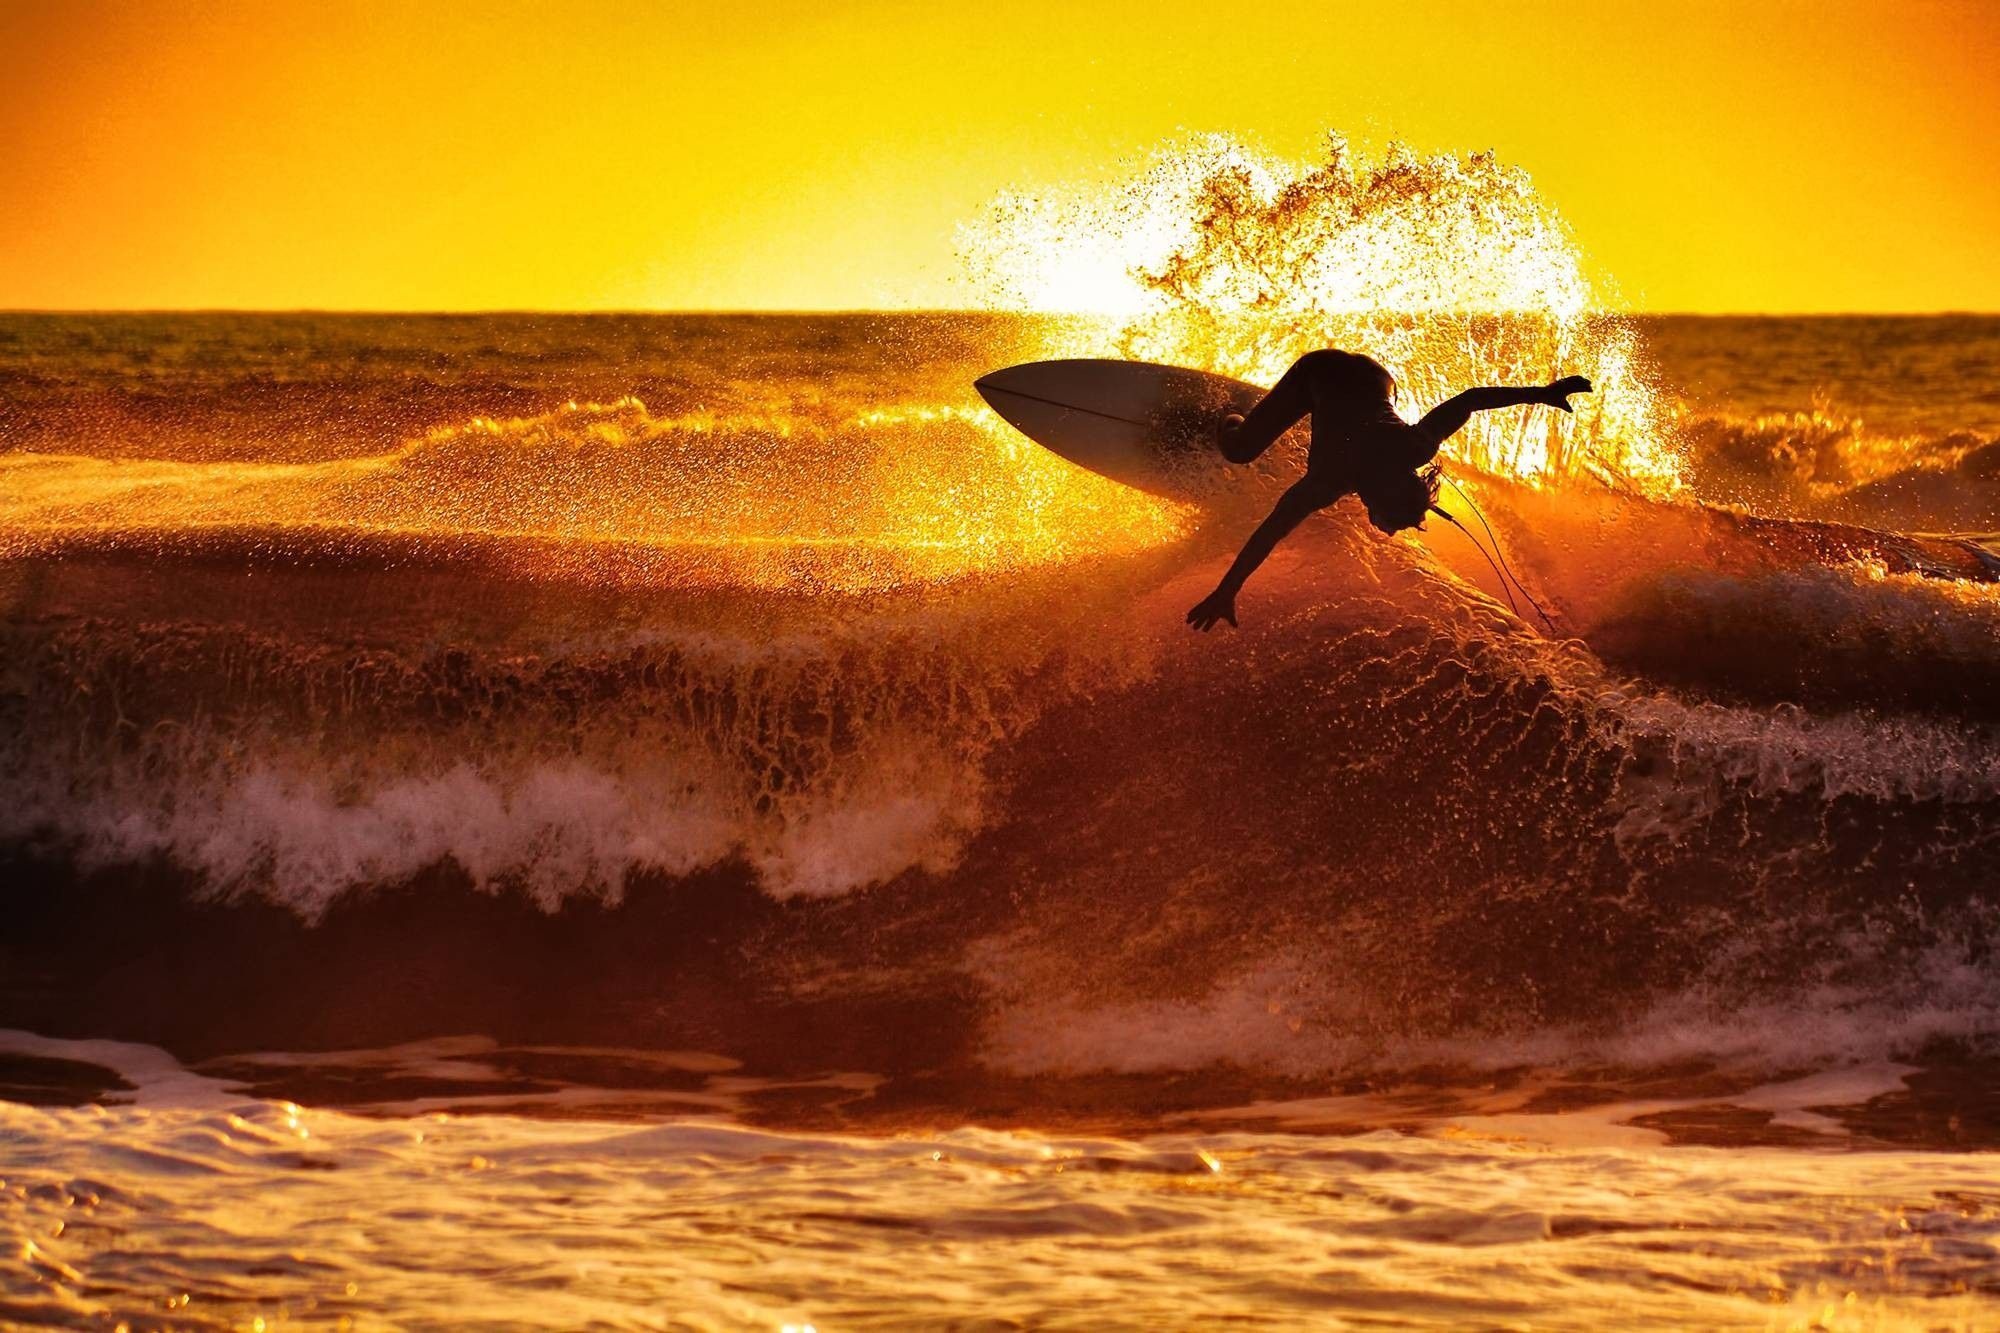 Sunset beach surfing, Golden hour magic, Ocean tranquility, Surfer's paradise, 2000x1340 HD Desktop